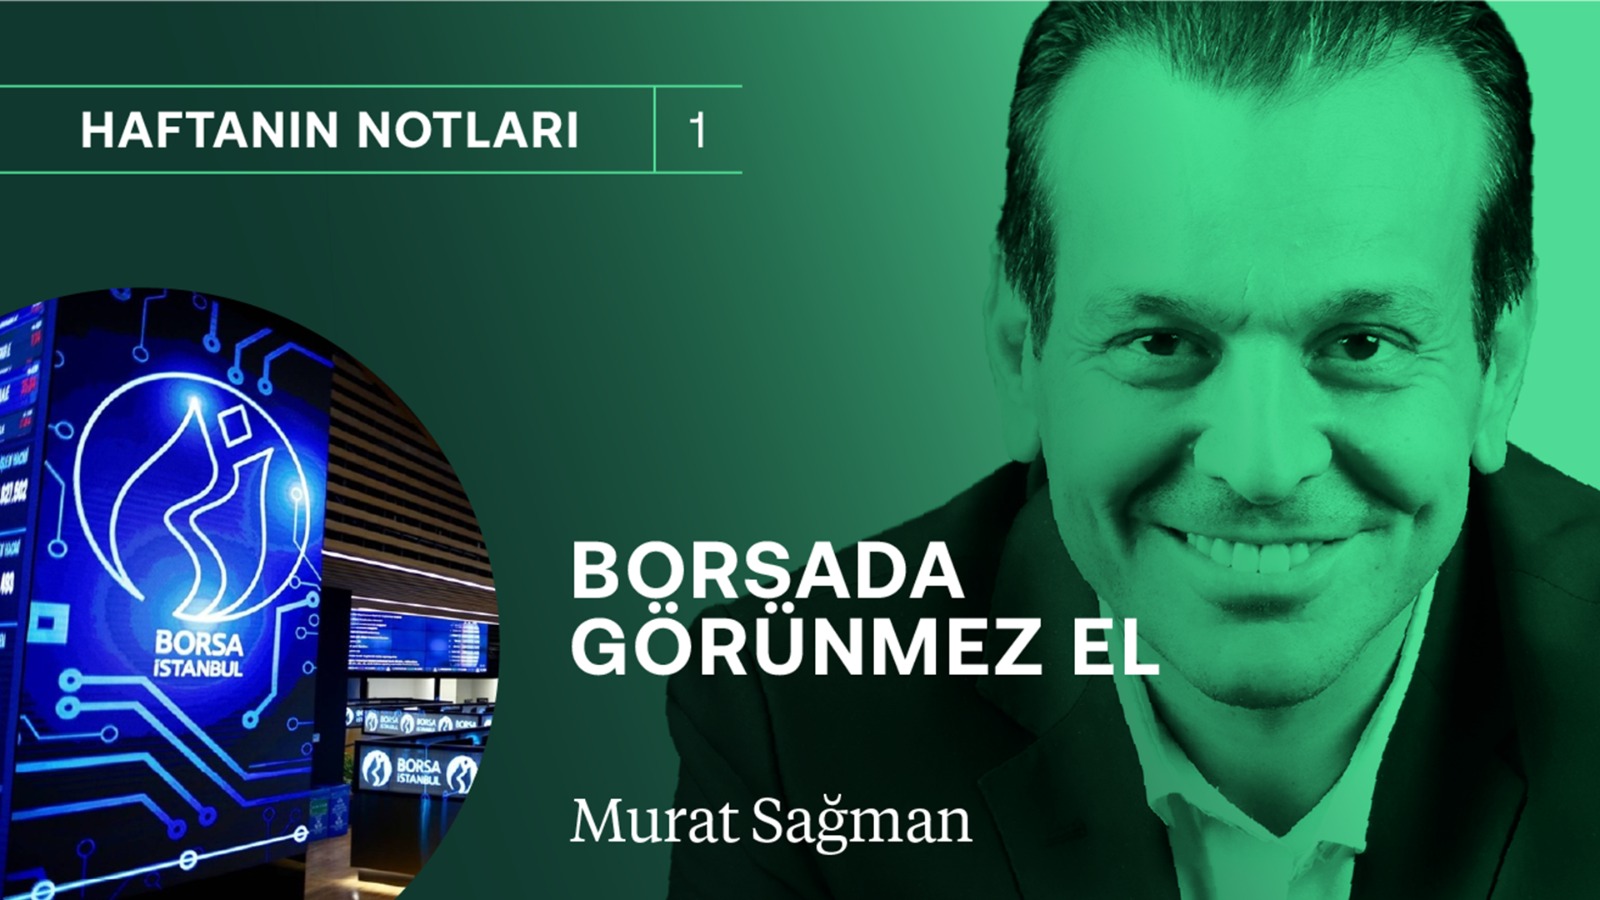 30 yıldır böyle bir şey görmedim! & Borsada “GÖRÜNMEZ EL” | Murat Sağman